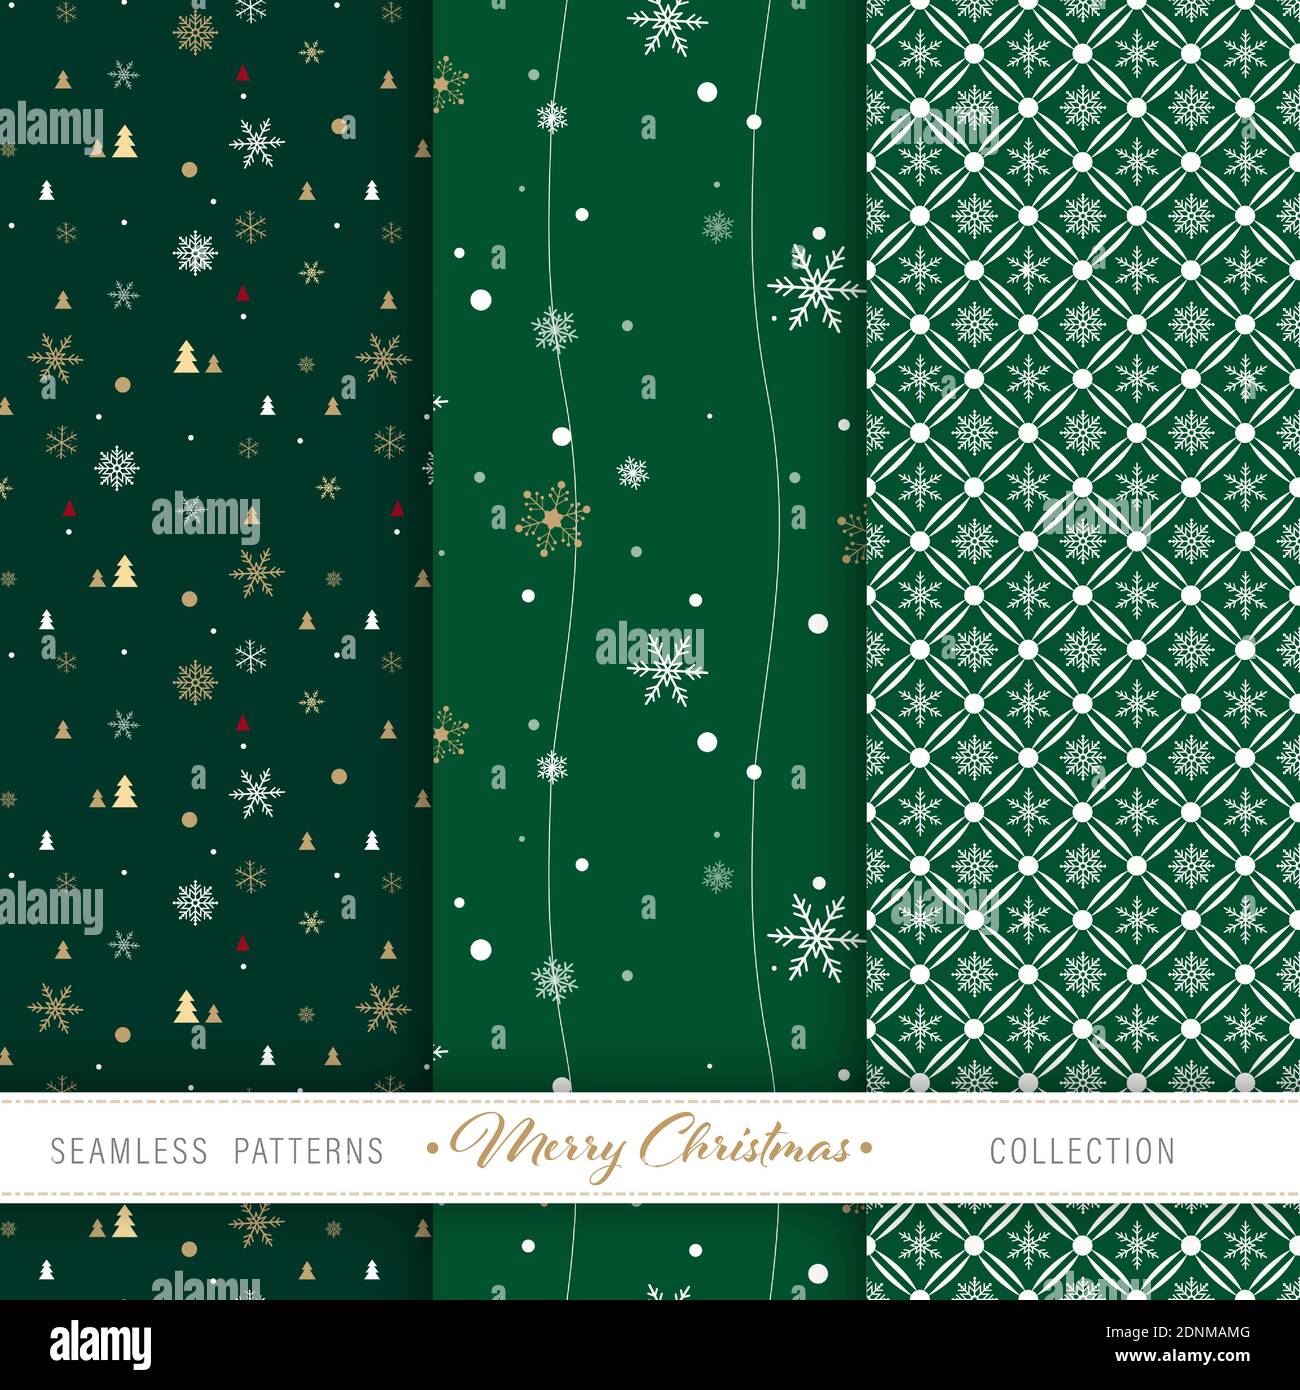 Weihnachten nahtlose Muster Set von 3 Designs für Backdrops, Geschenkpapier, Basteln etc. Stock Vektor